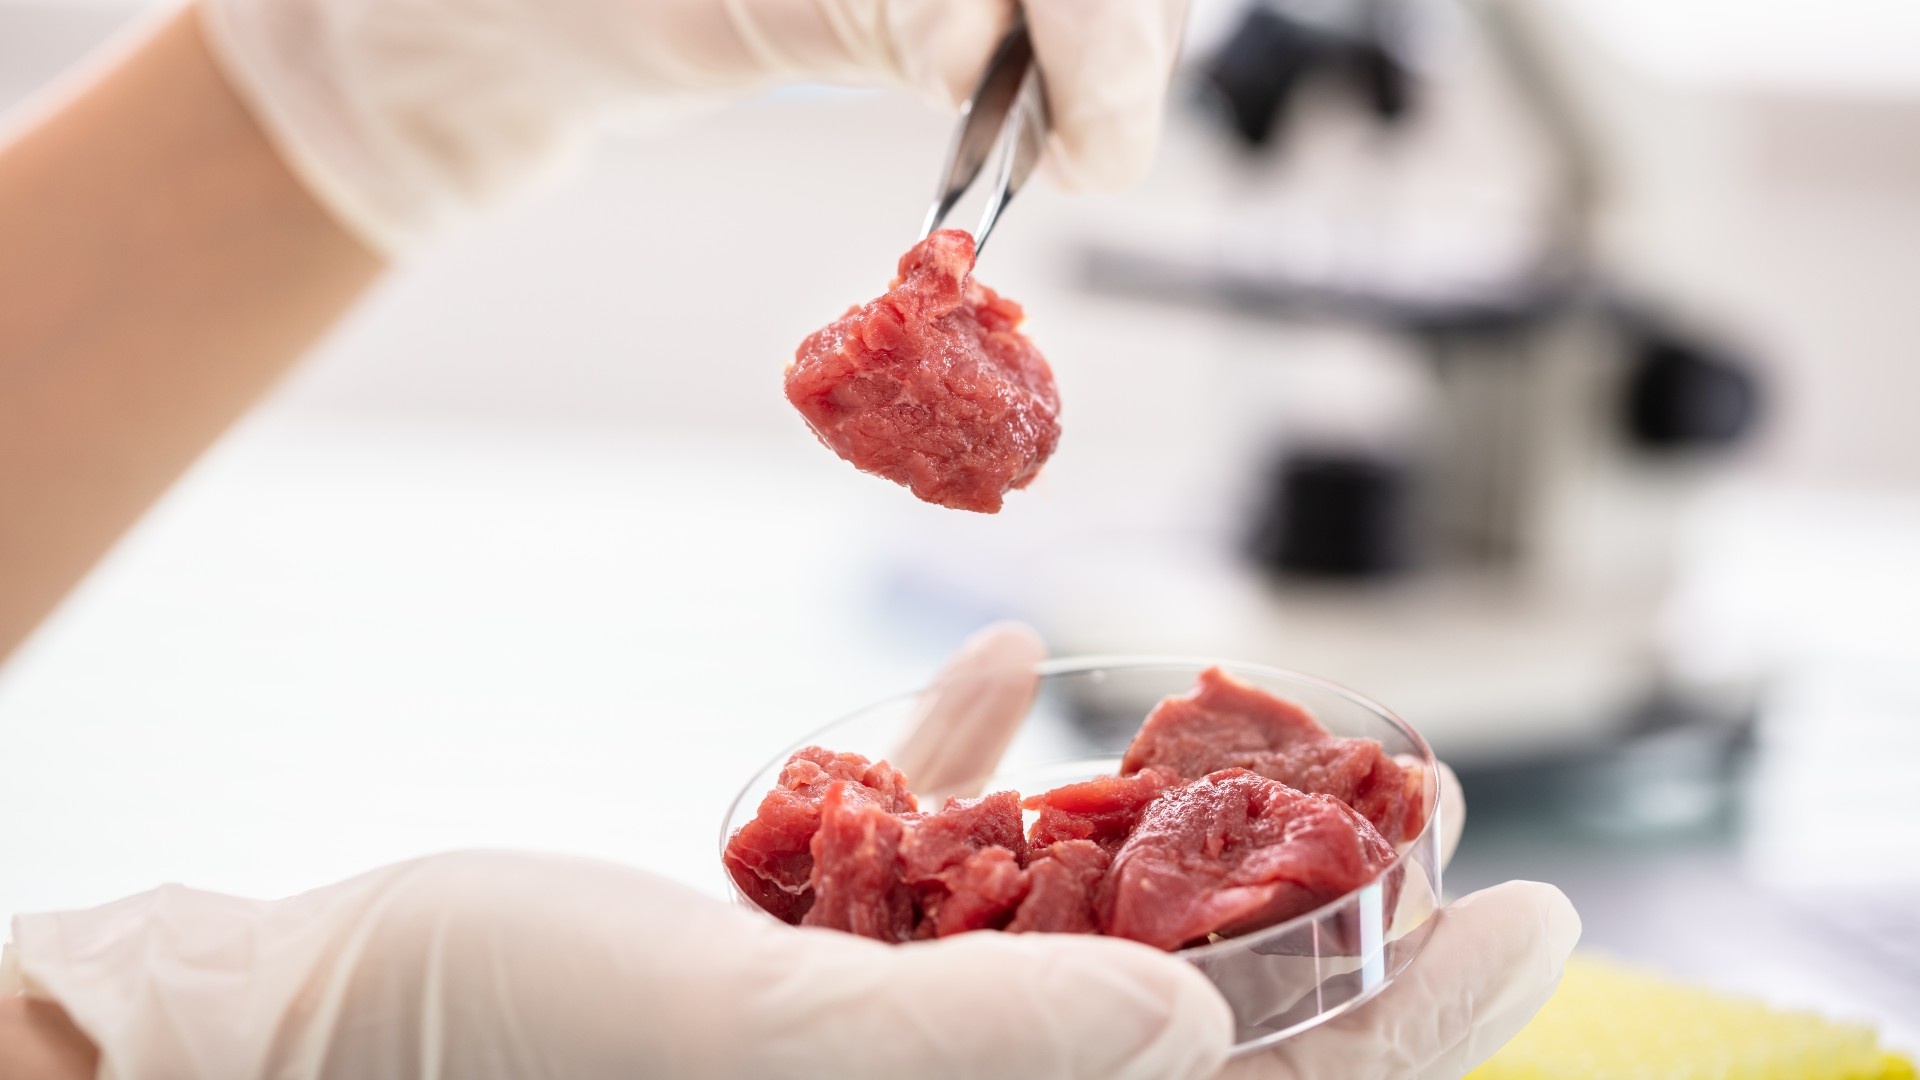 Phê duyệt loại thịt đầu tiên nuôi trong phòng thí nghiệm - Ảnh 2.